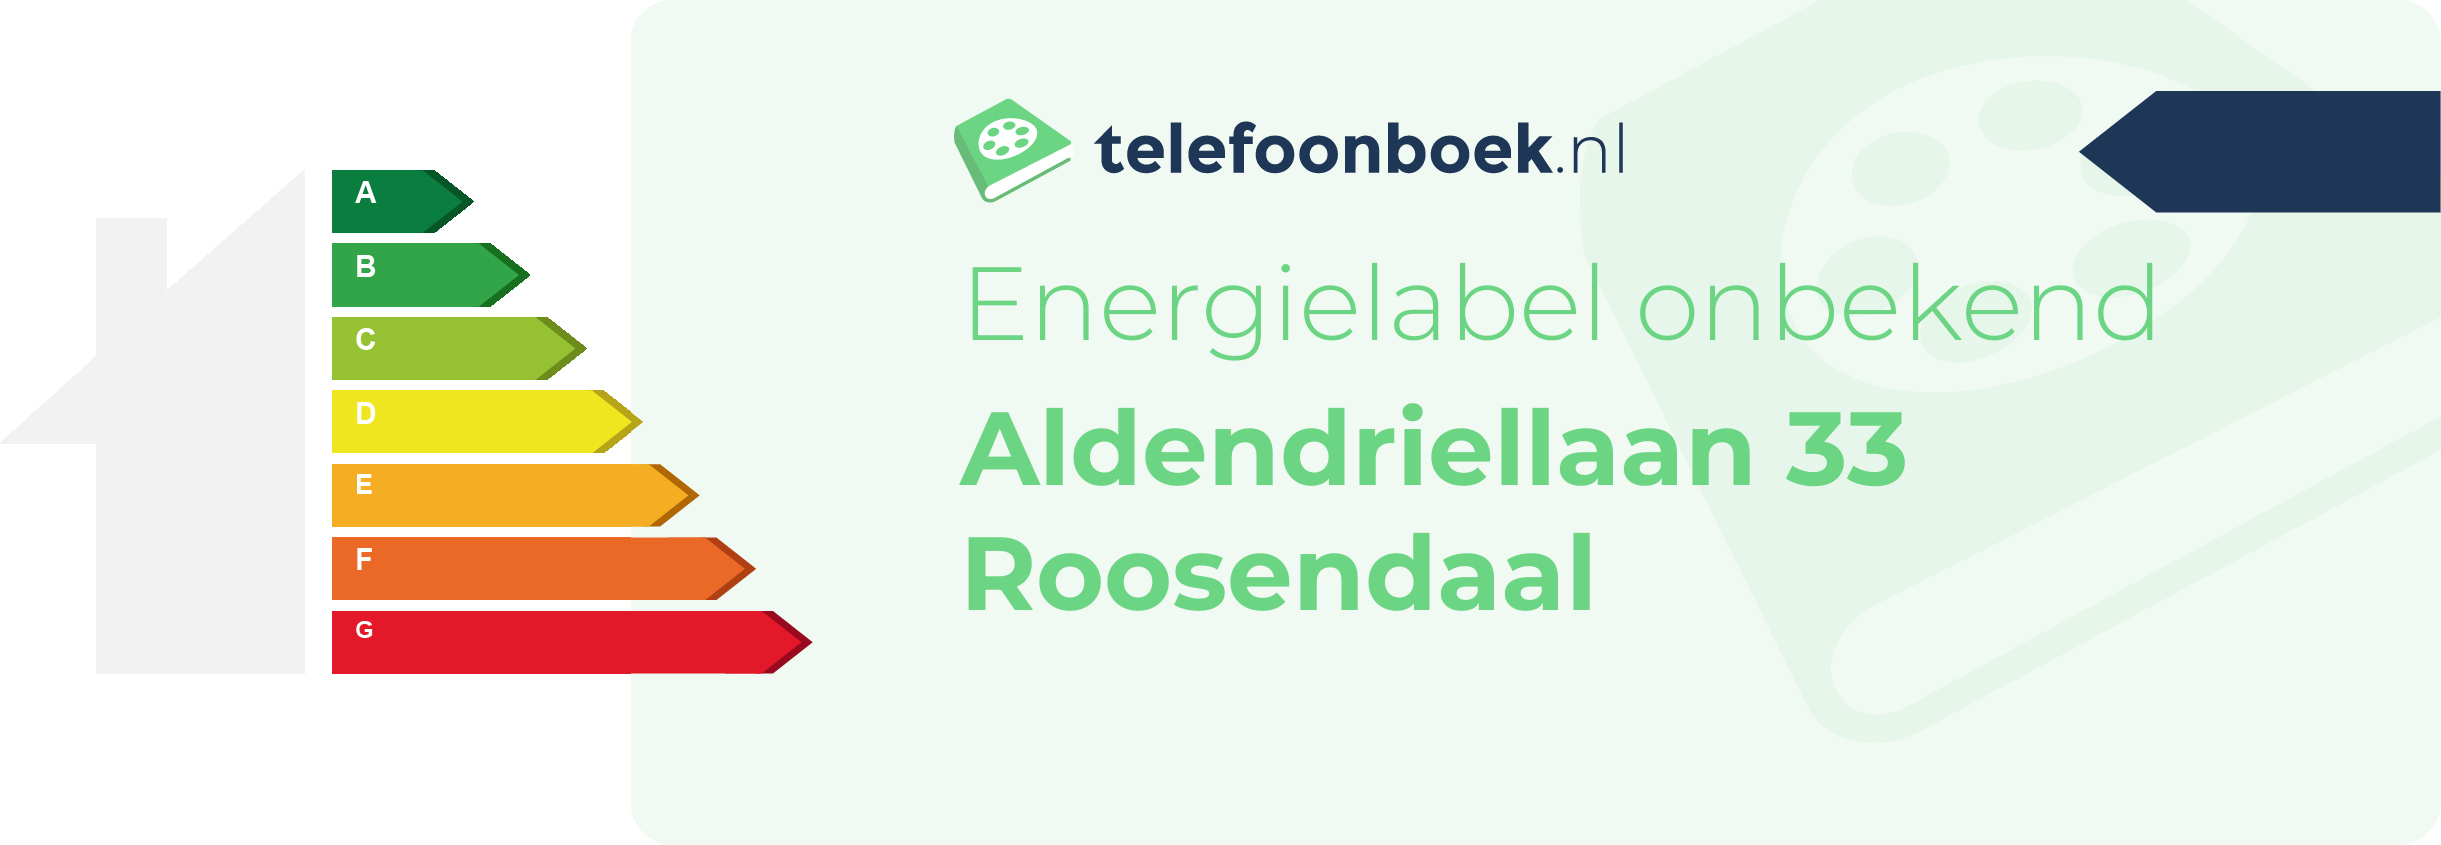 Energielabel Aldendriellaan 33 Roosendaal